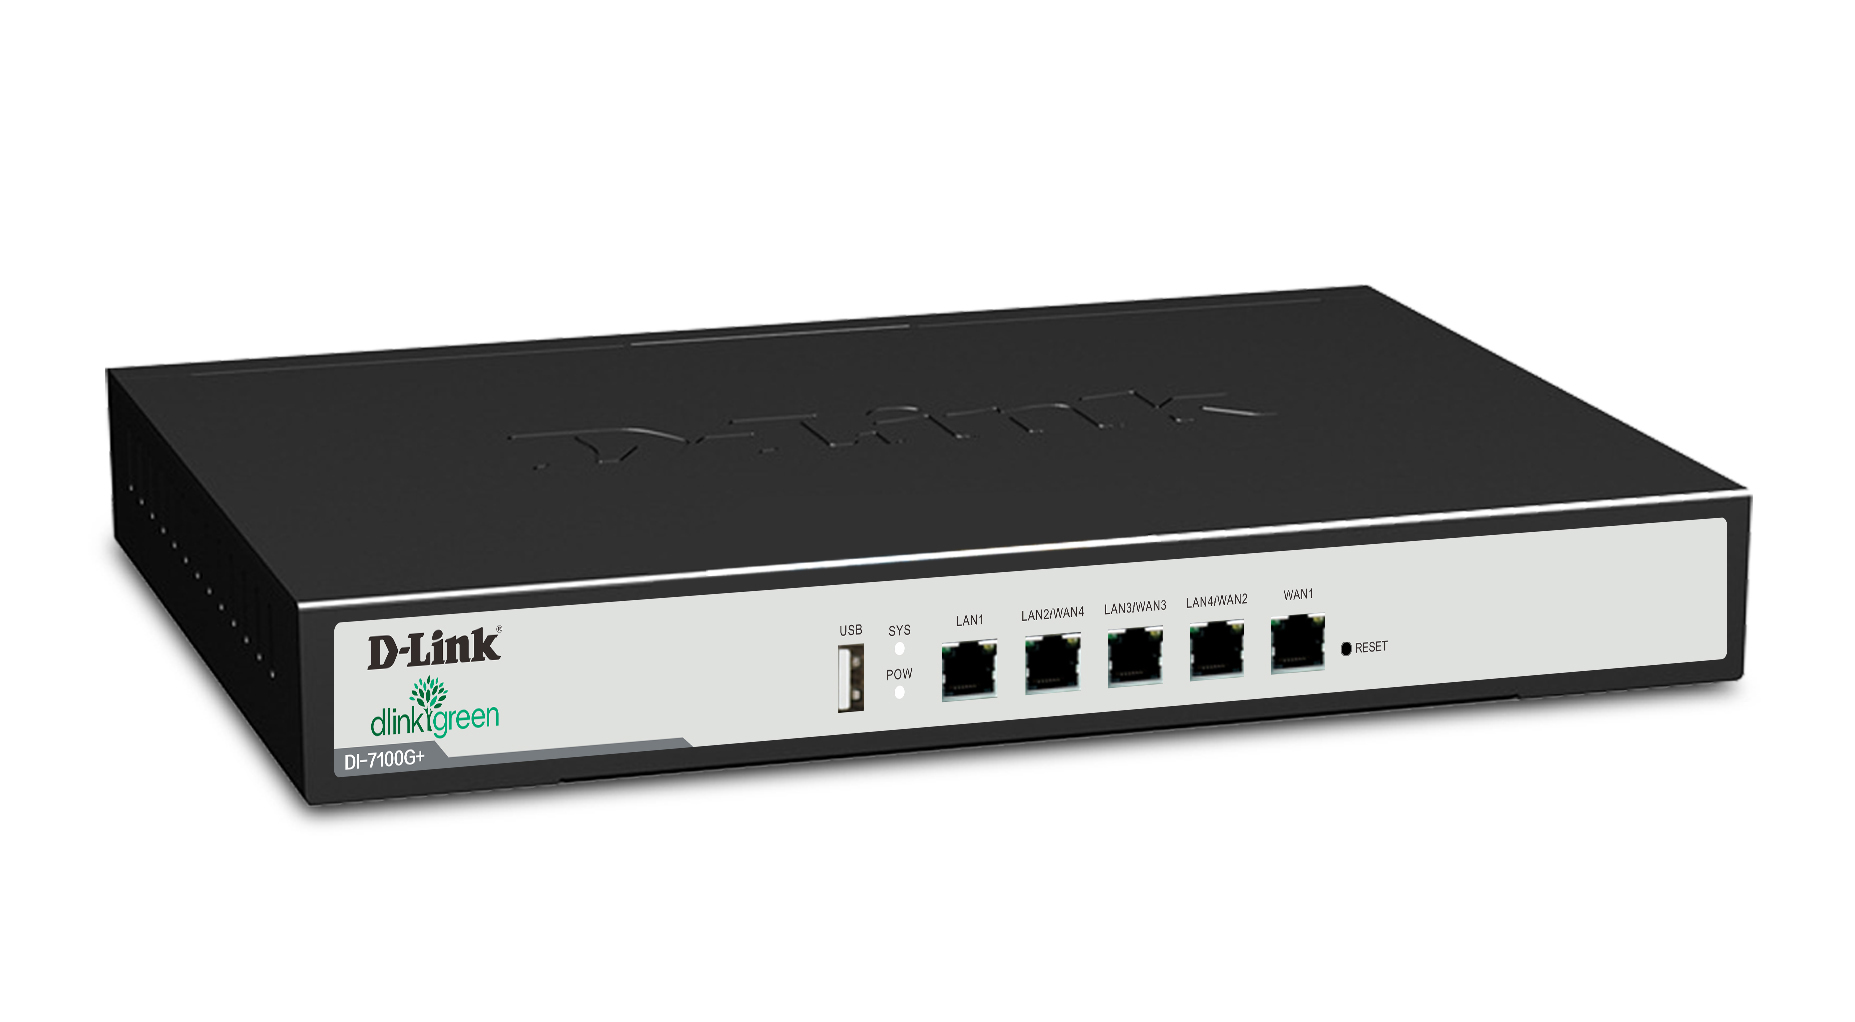 D-LINK 7100G+ 企业级智能上网行管理路由网关